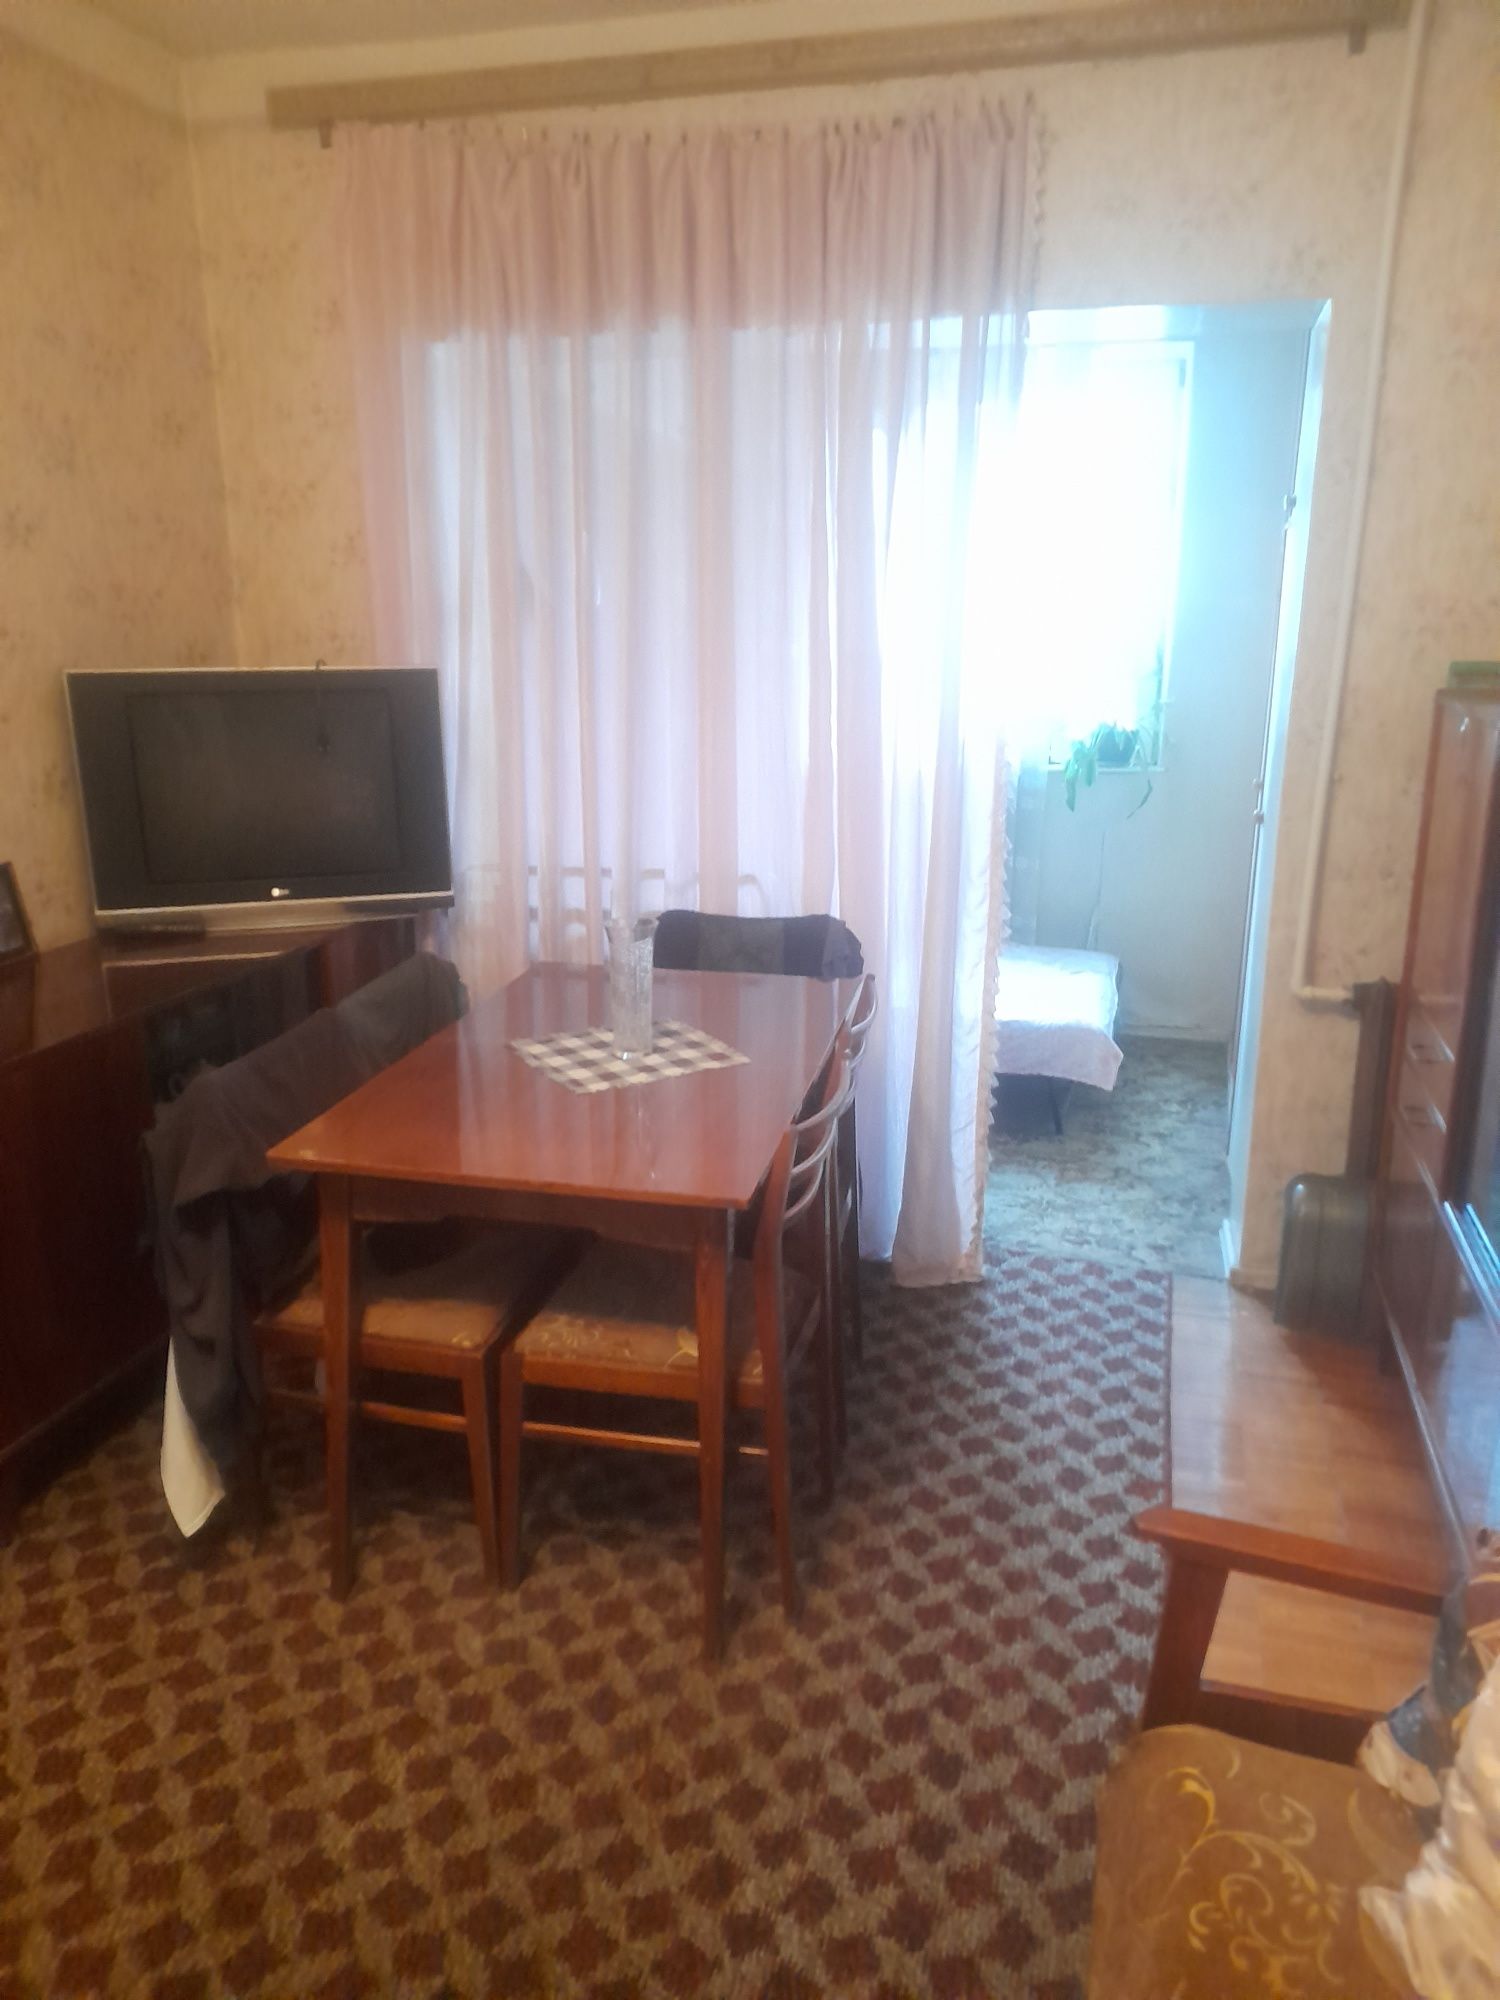 Продаётся СВОЯ квартира 2 комнатная,Мирзо-Улугбекский район,Кара Су-1.